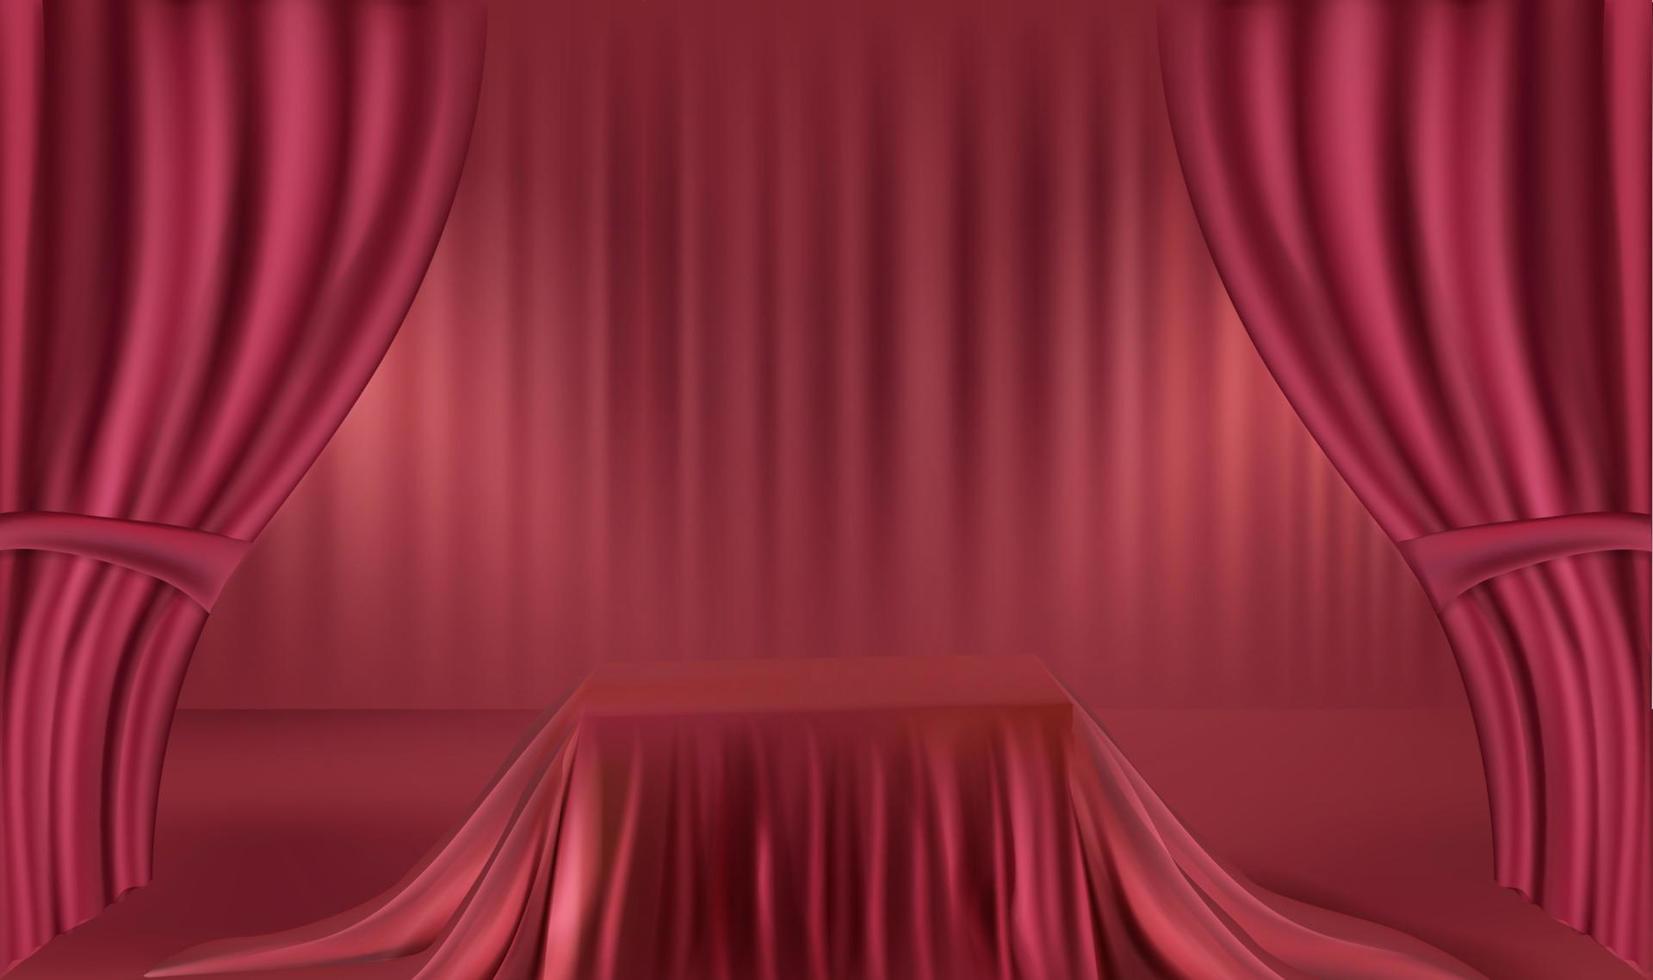 pódio realista vermelho com cortina vermelha, exposição de produto, apresentação, propaganda vetor